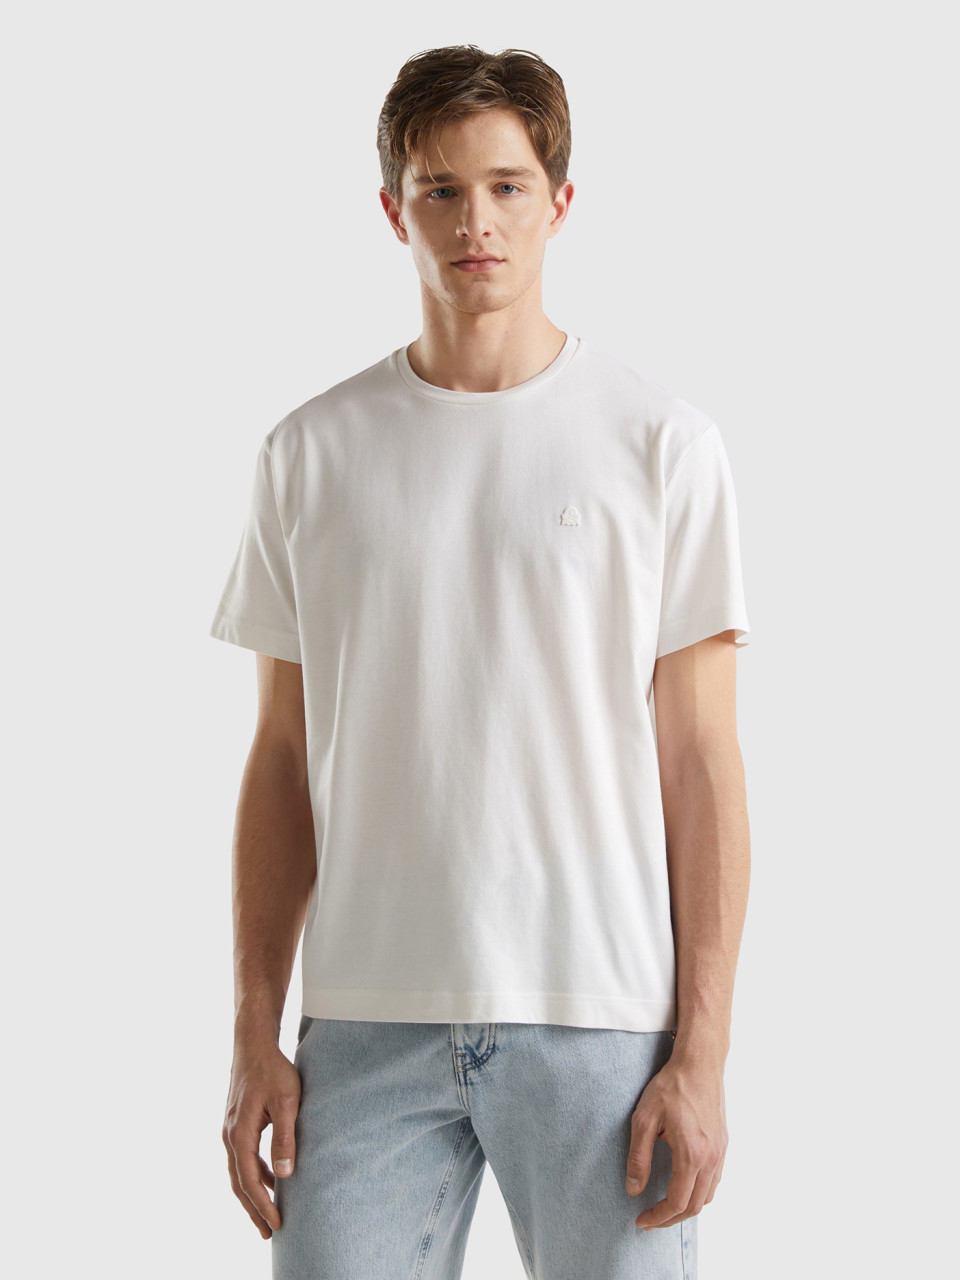 Benetton, Mikro-piqué-shirt, Weiss, male